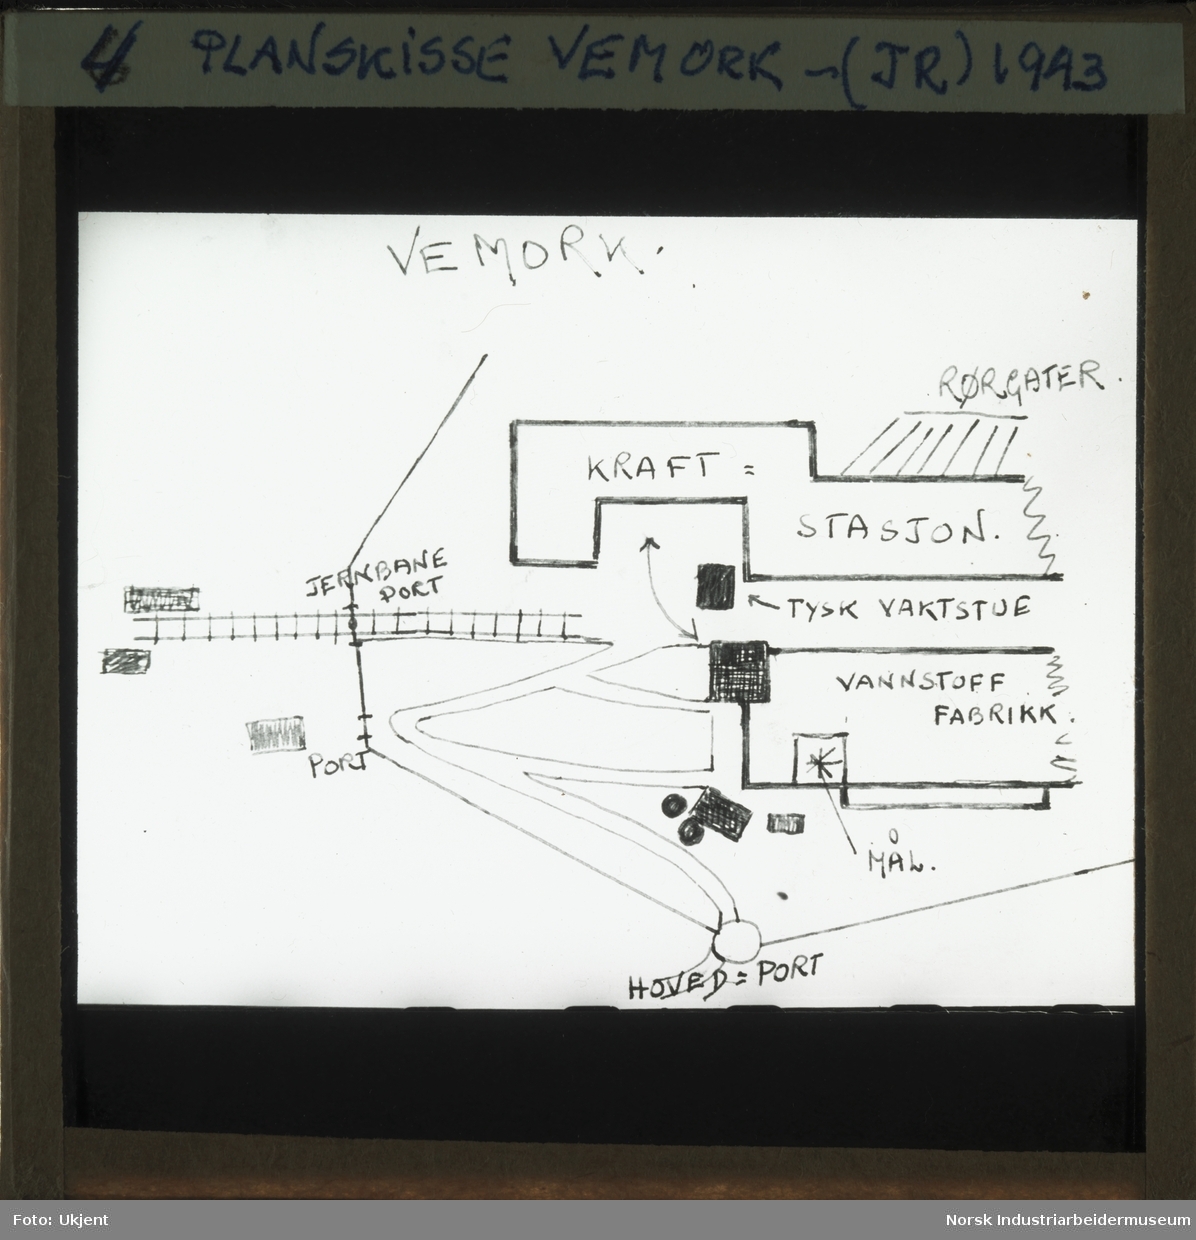 Håndtegnet planskisse over Vemork anlegget med inntegnet mål for operasjon Gunnerside, tyske vaktbuer og port som Gunnerside teamet skulle forsere.